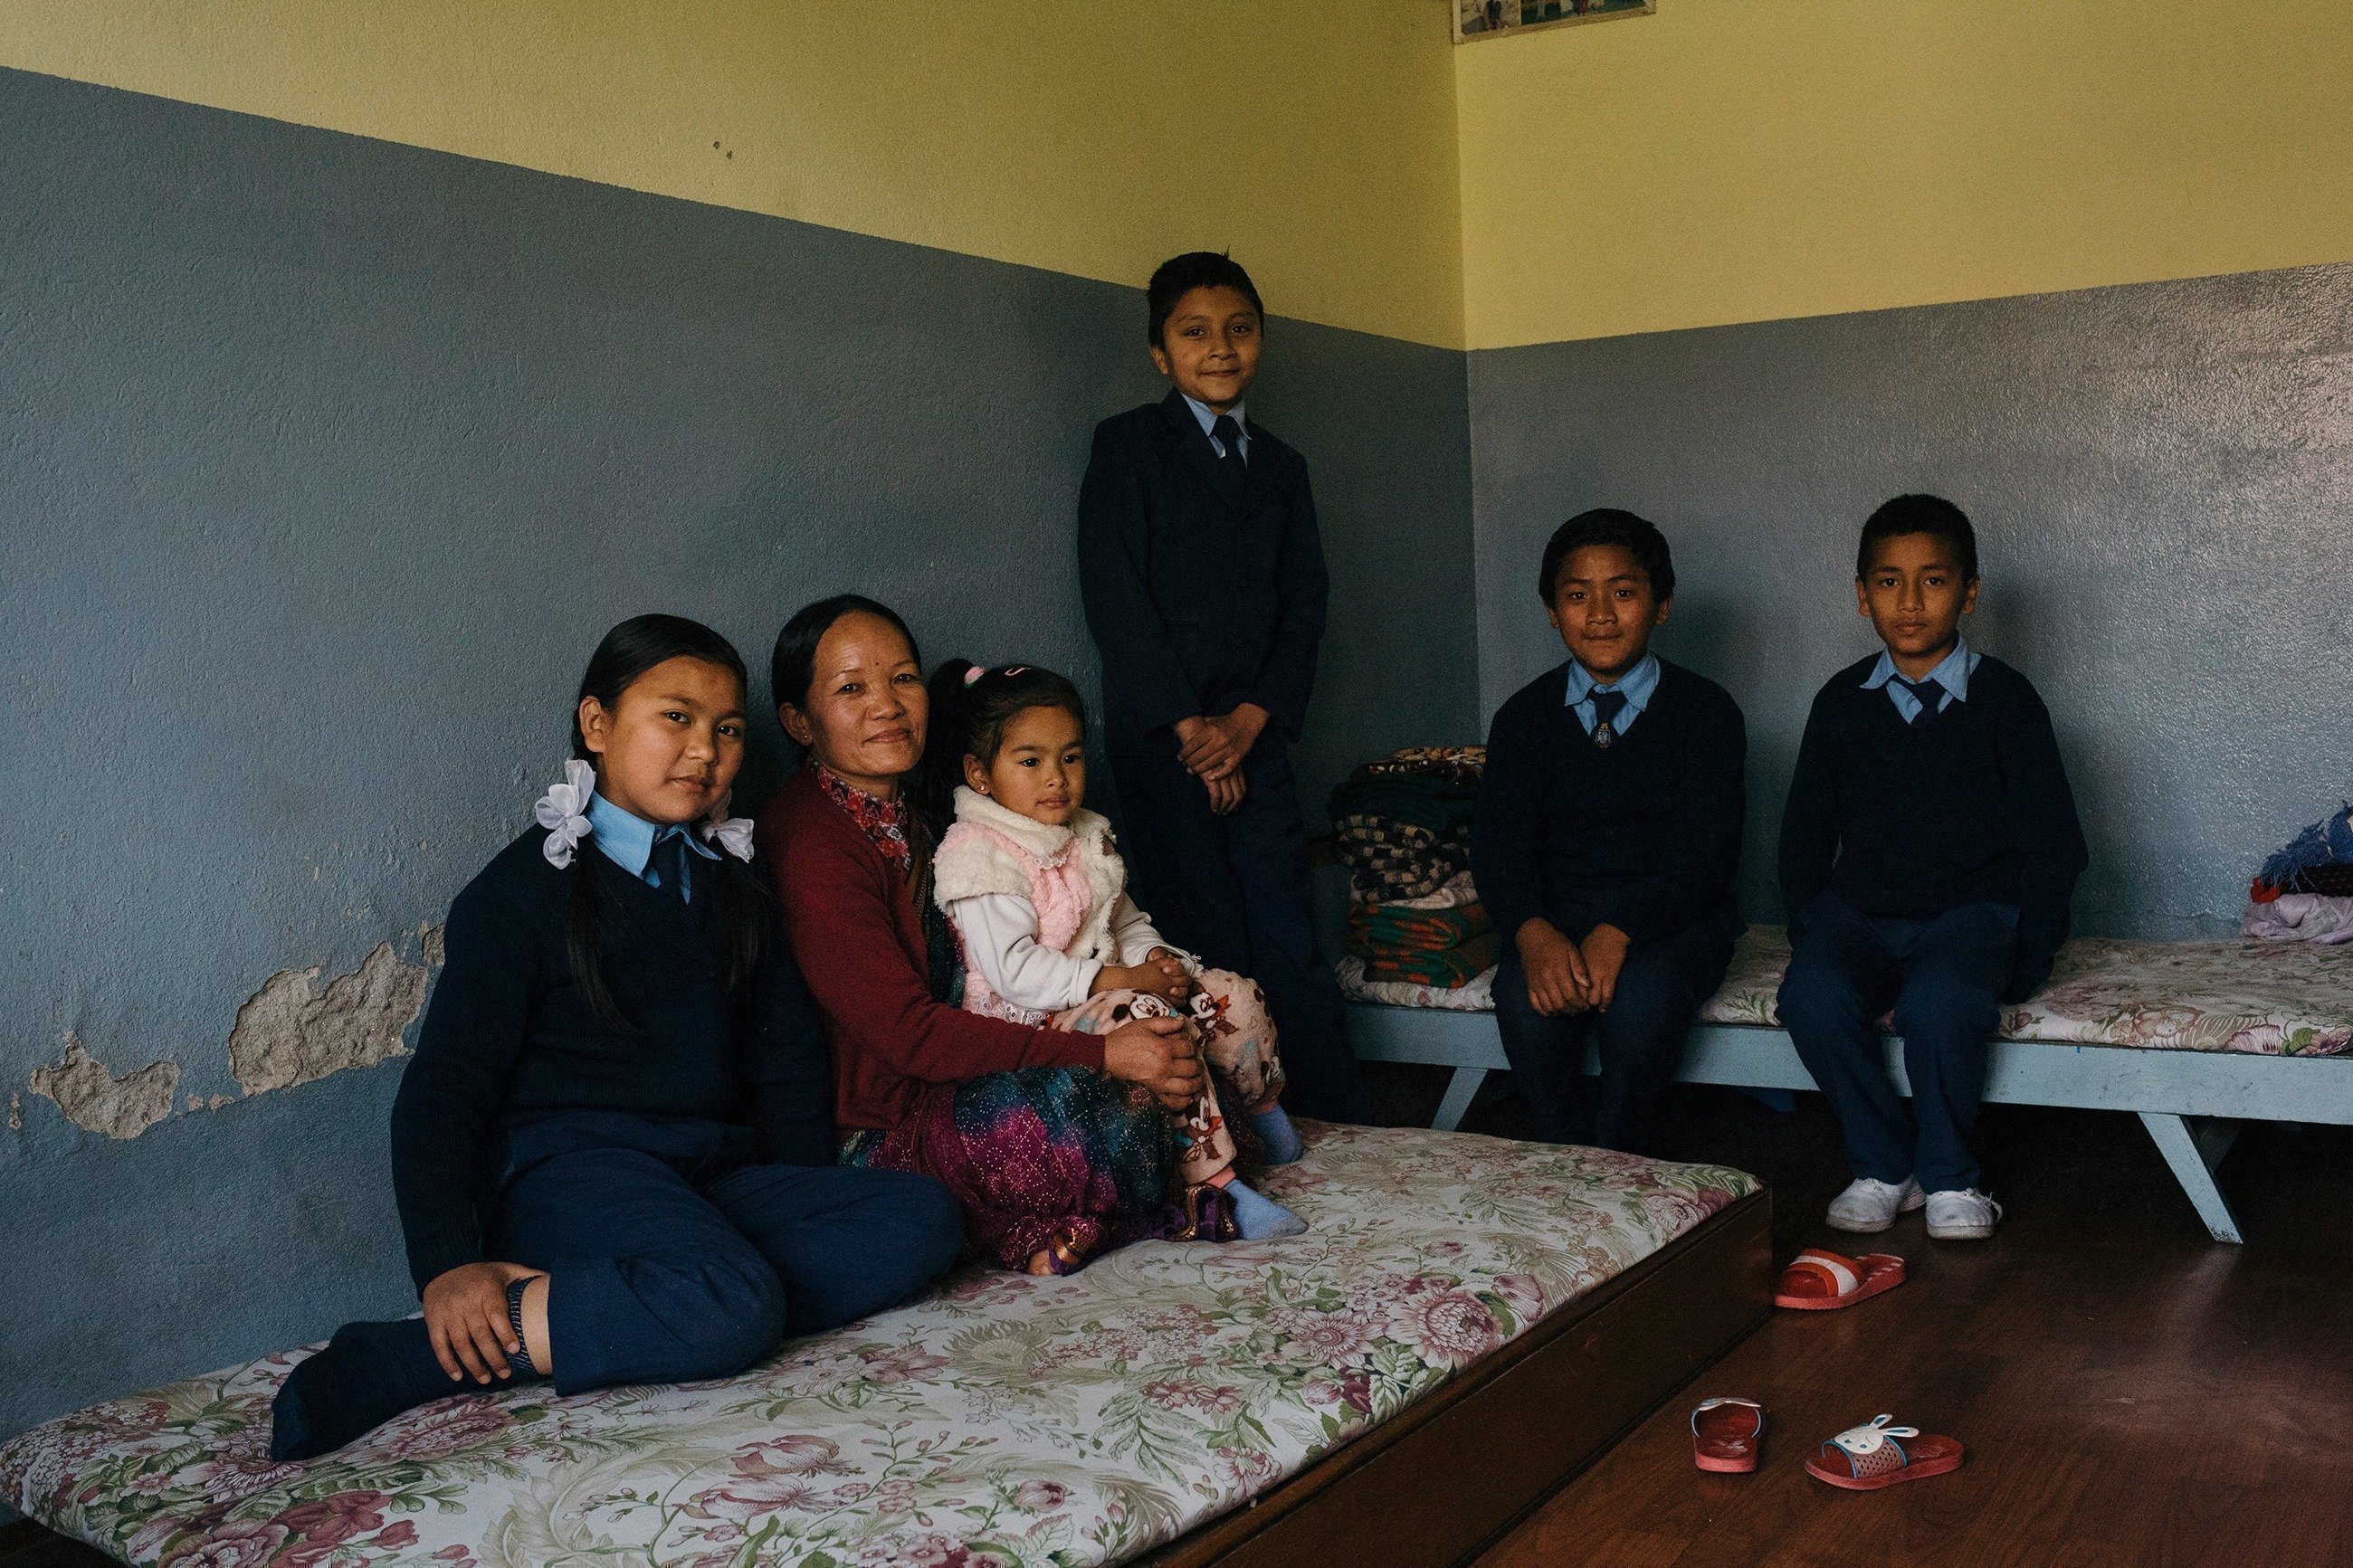 Devenez marraine pou parrain d'un village au Népal pour permettre aux enfants en détresse de grandir en bonne santé.